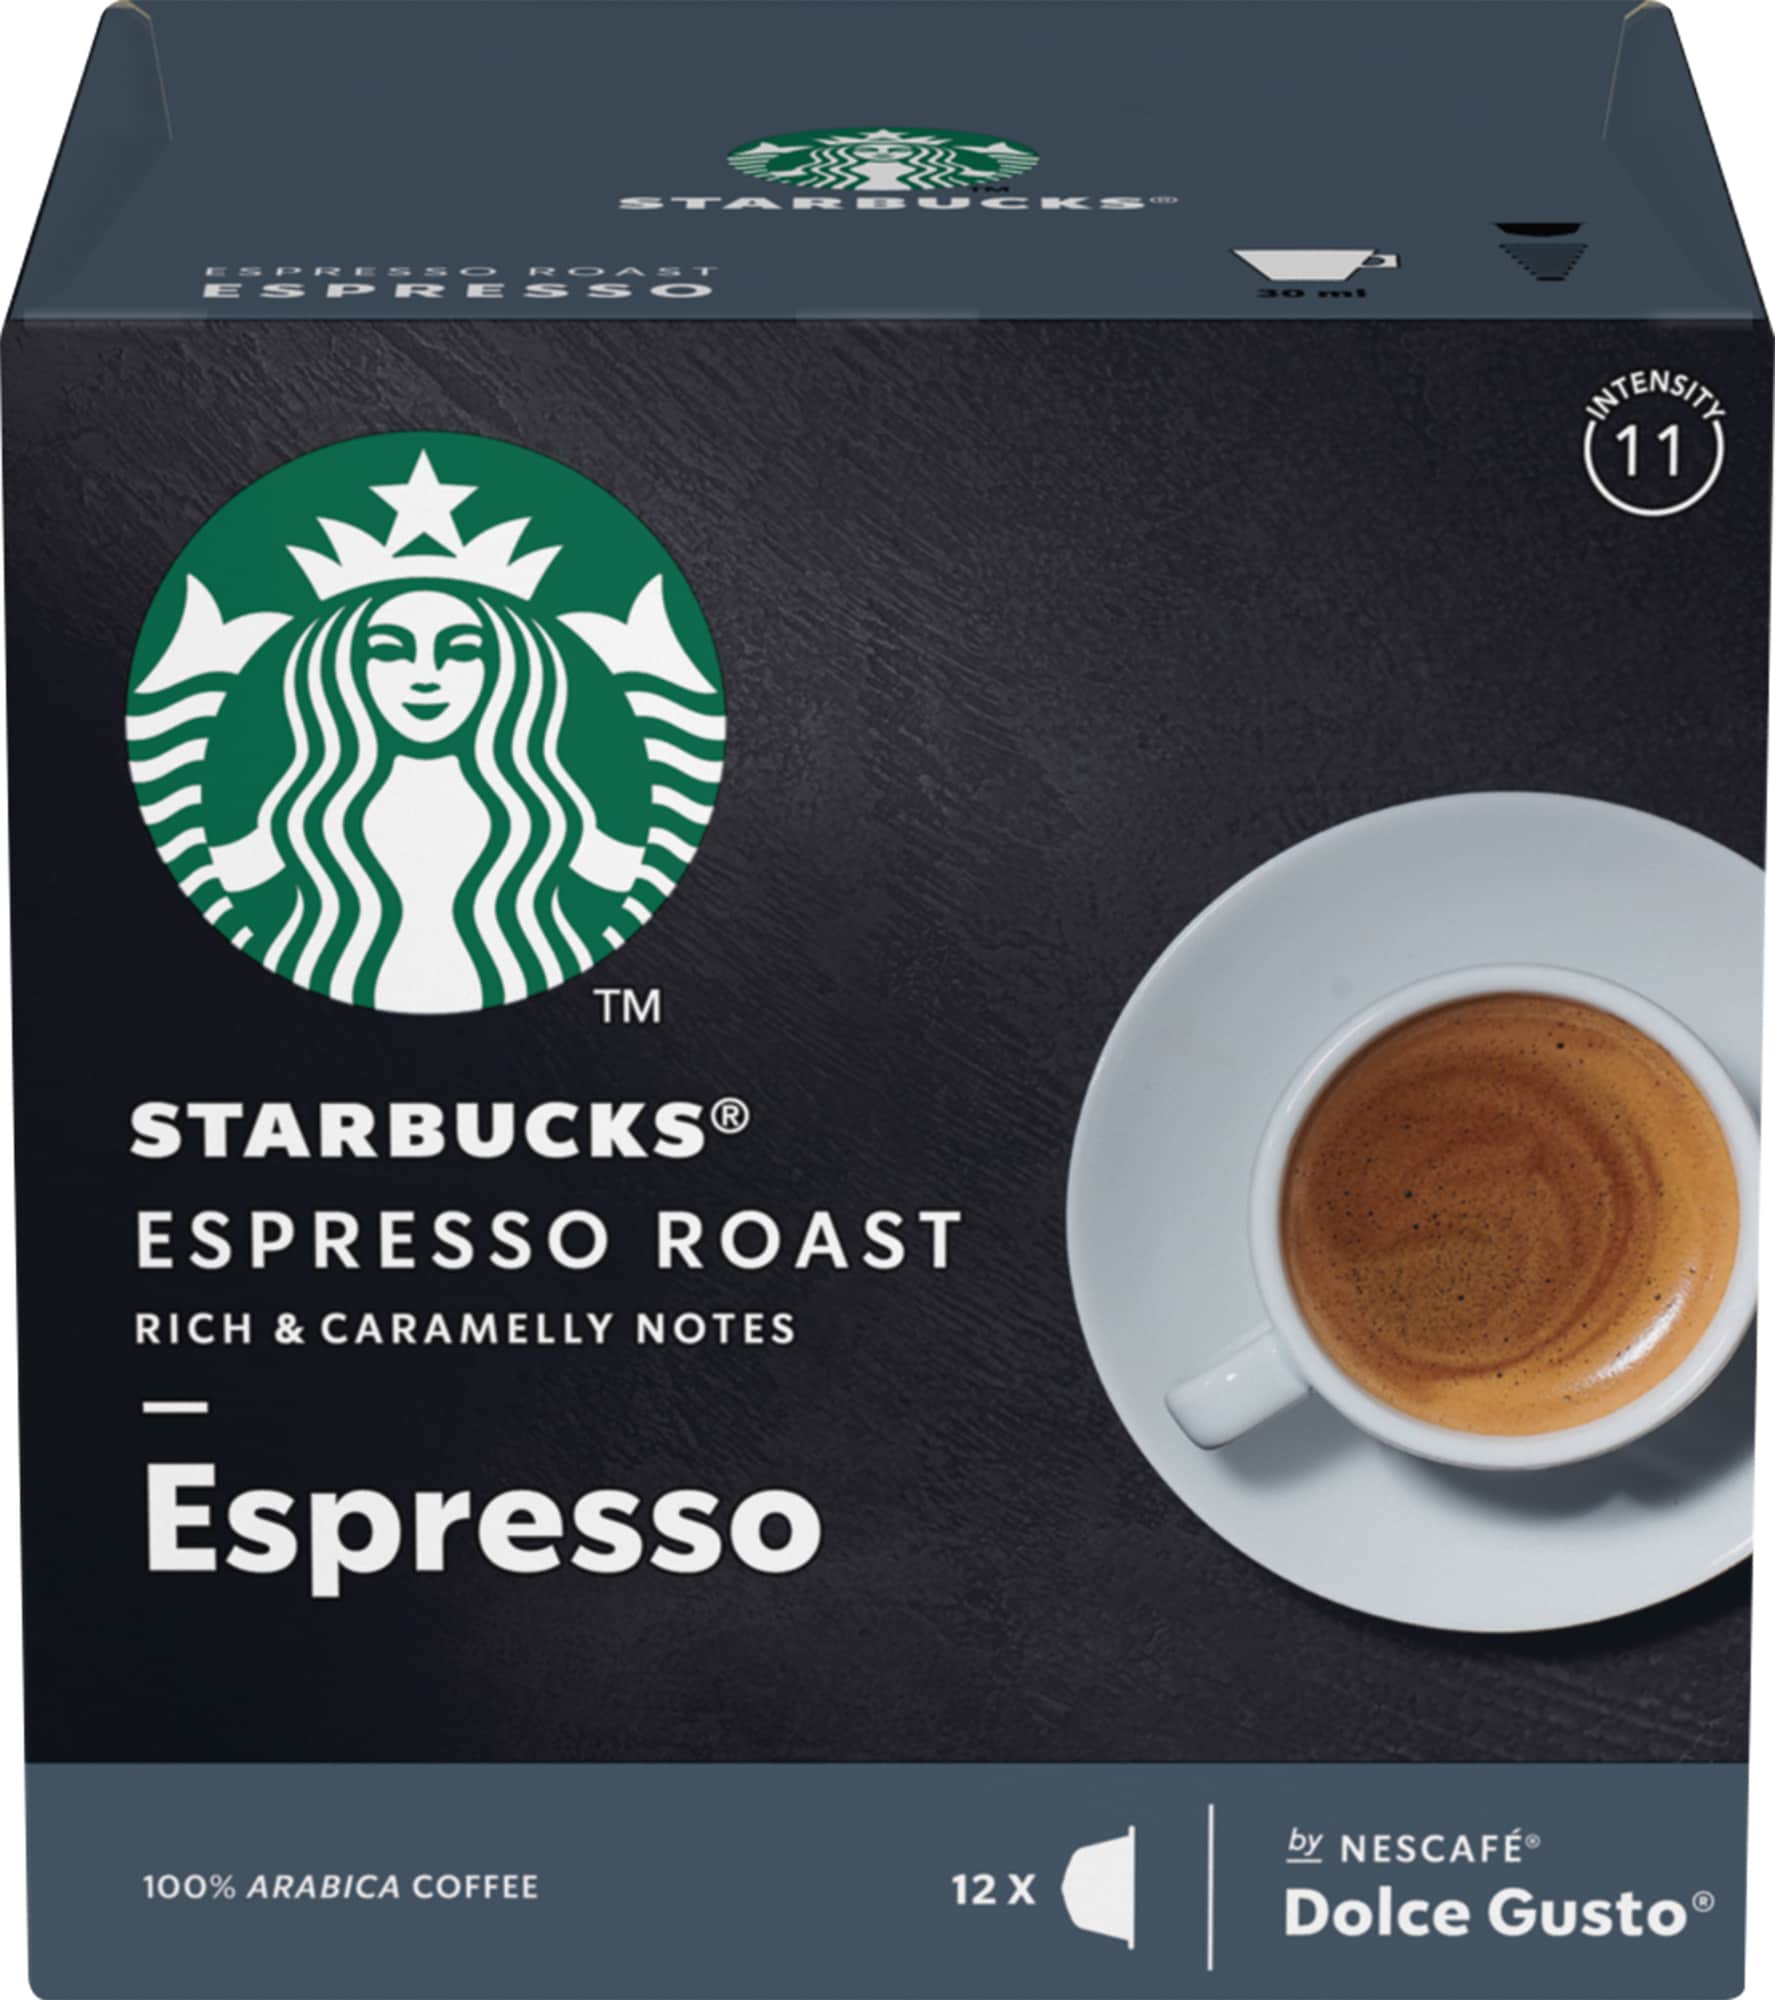 Starbucks Espresso Roast kaffekapsler fra Nescafé Dolce Gusto thumbnail